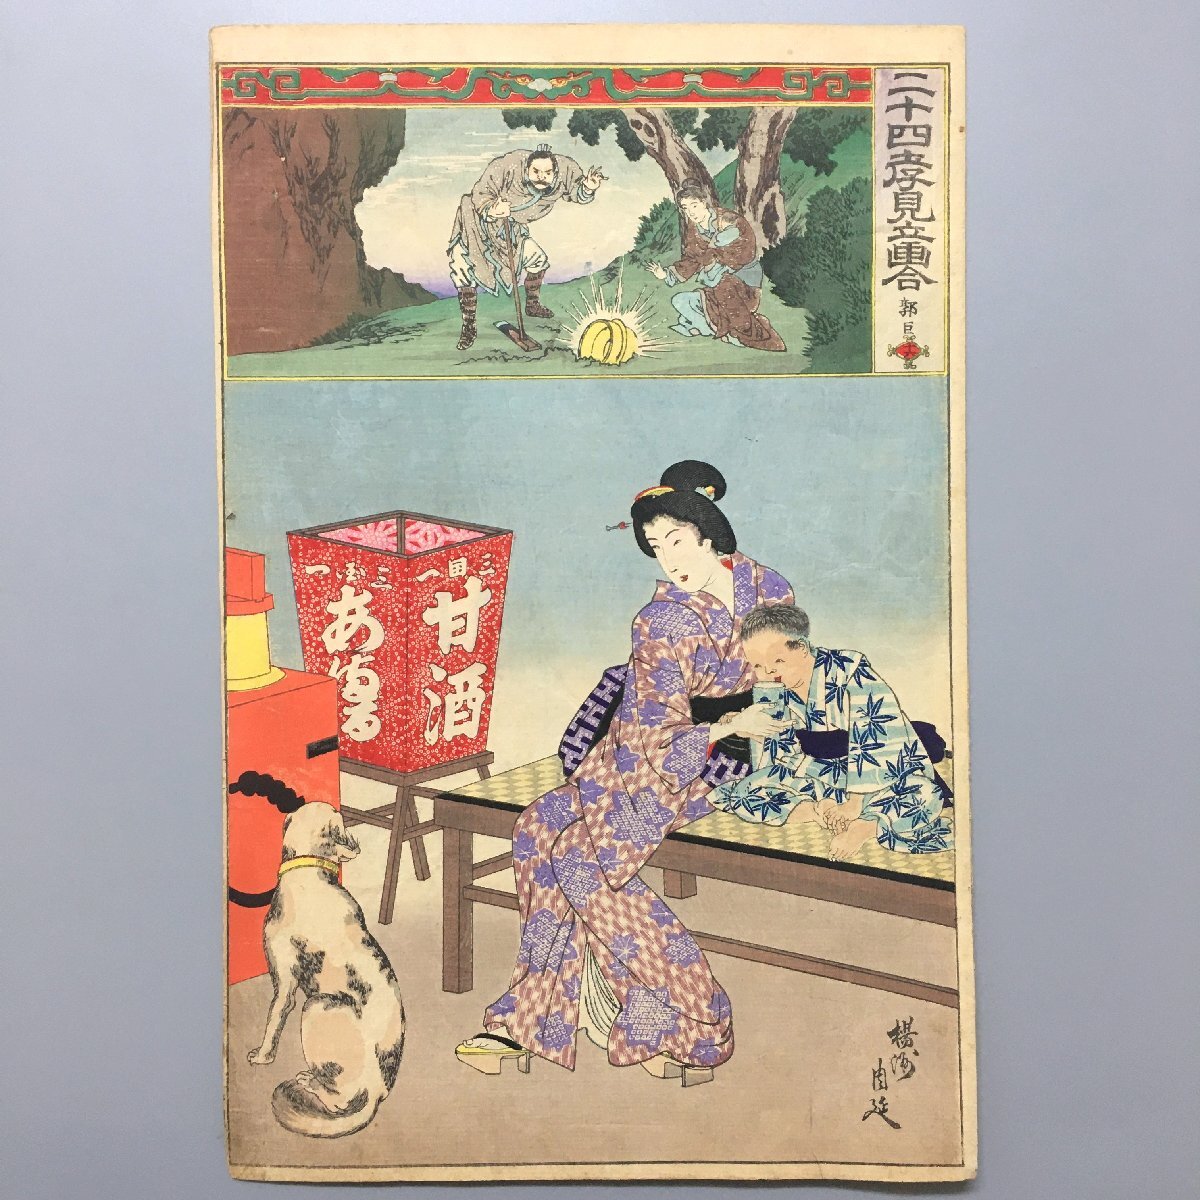 أربعة وعشرون لوحة تاكامي الدائمة, الثامن عشر تشيانلو يانغشو شونوبو, ميجي 23, نيشيكي إي, تنسيق كبير ukiyo-e, الطباعة على الخشب, كلب, تلوين, أوكييو إي, مطبعة, لوحة امرأة جميلة